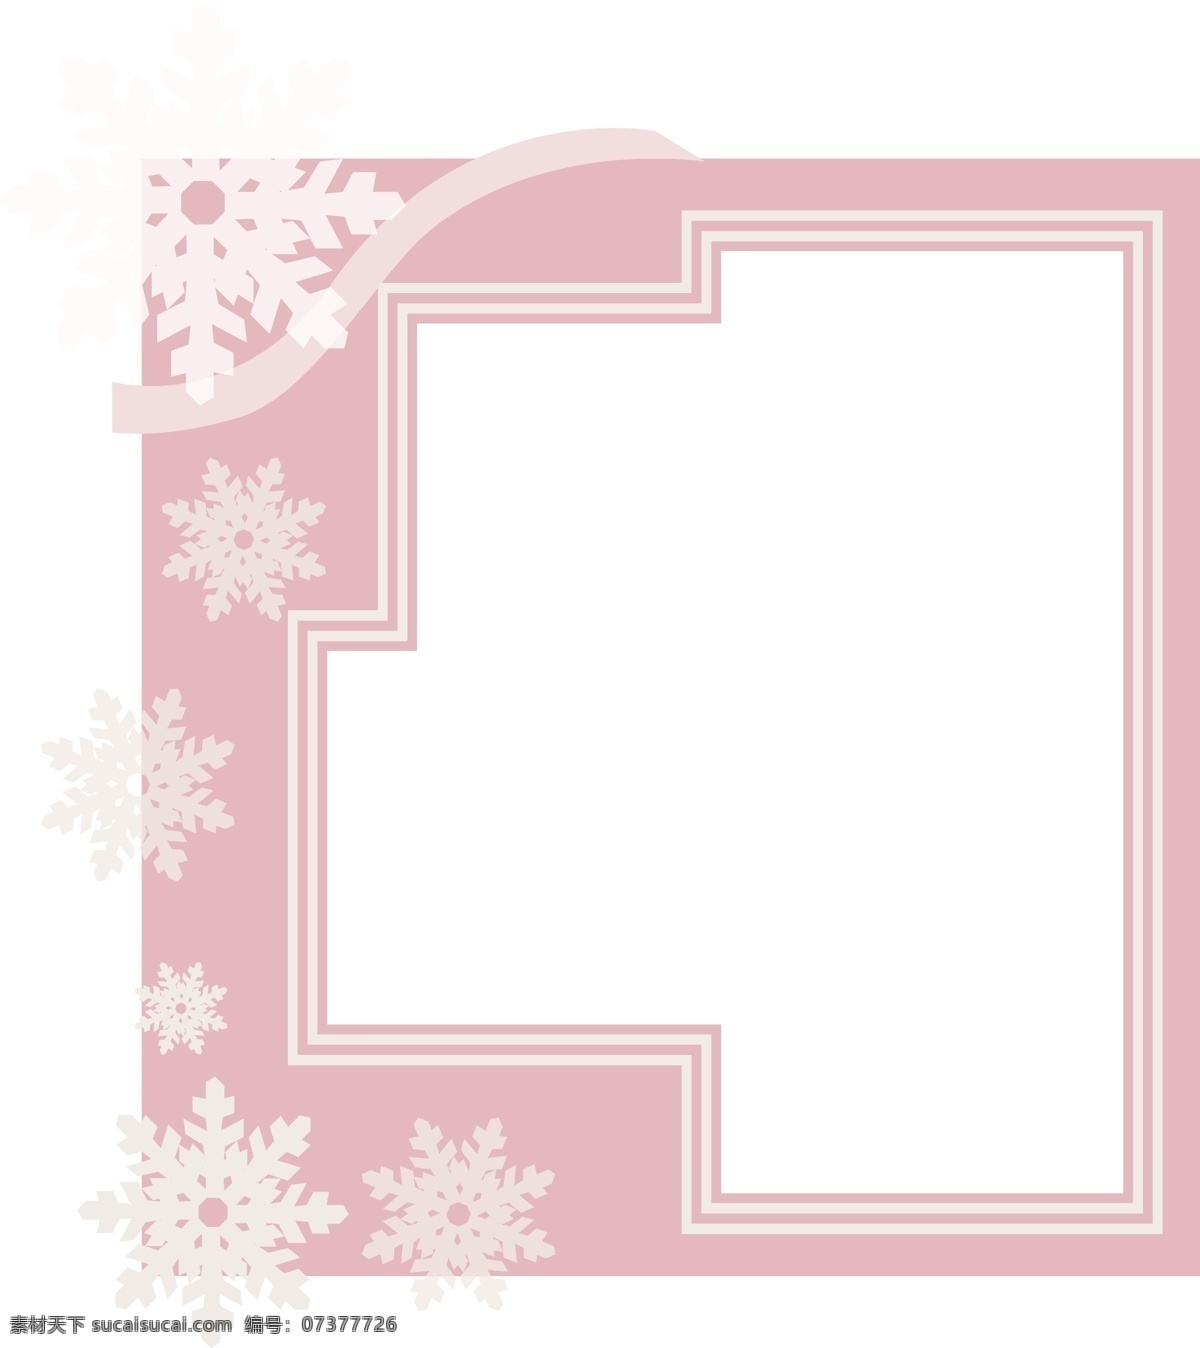 雪花 粉色 边框 插画 白色的雪花 粉色边框 多边形边框 唯美的边框 浪漫的边框 装饰边框